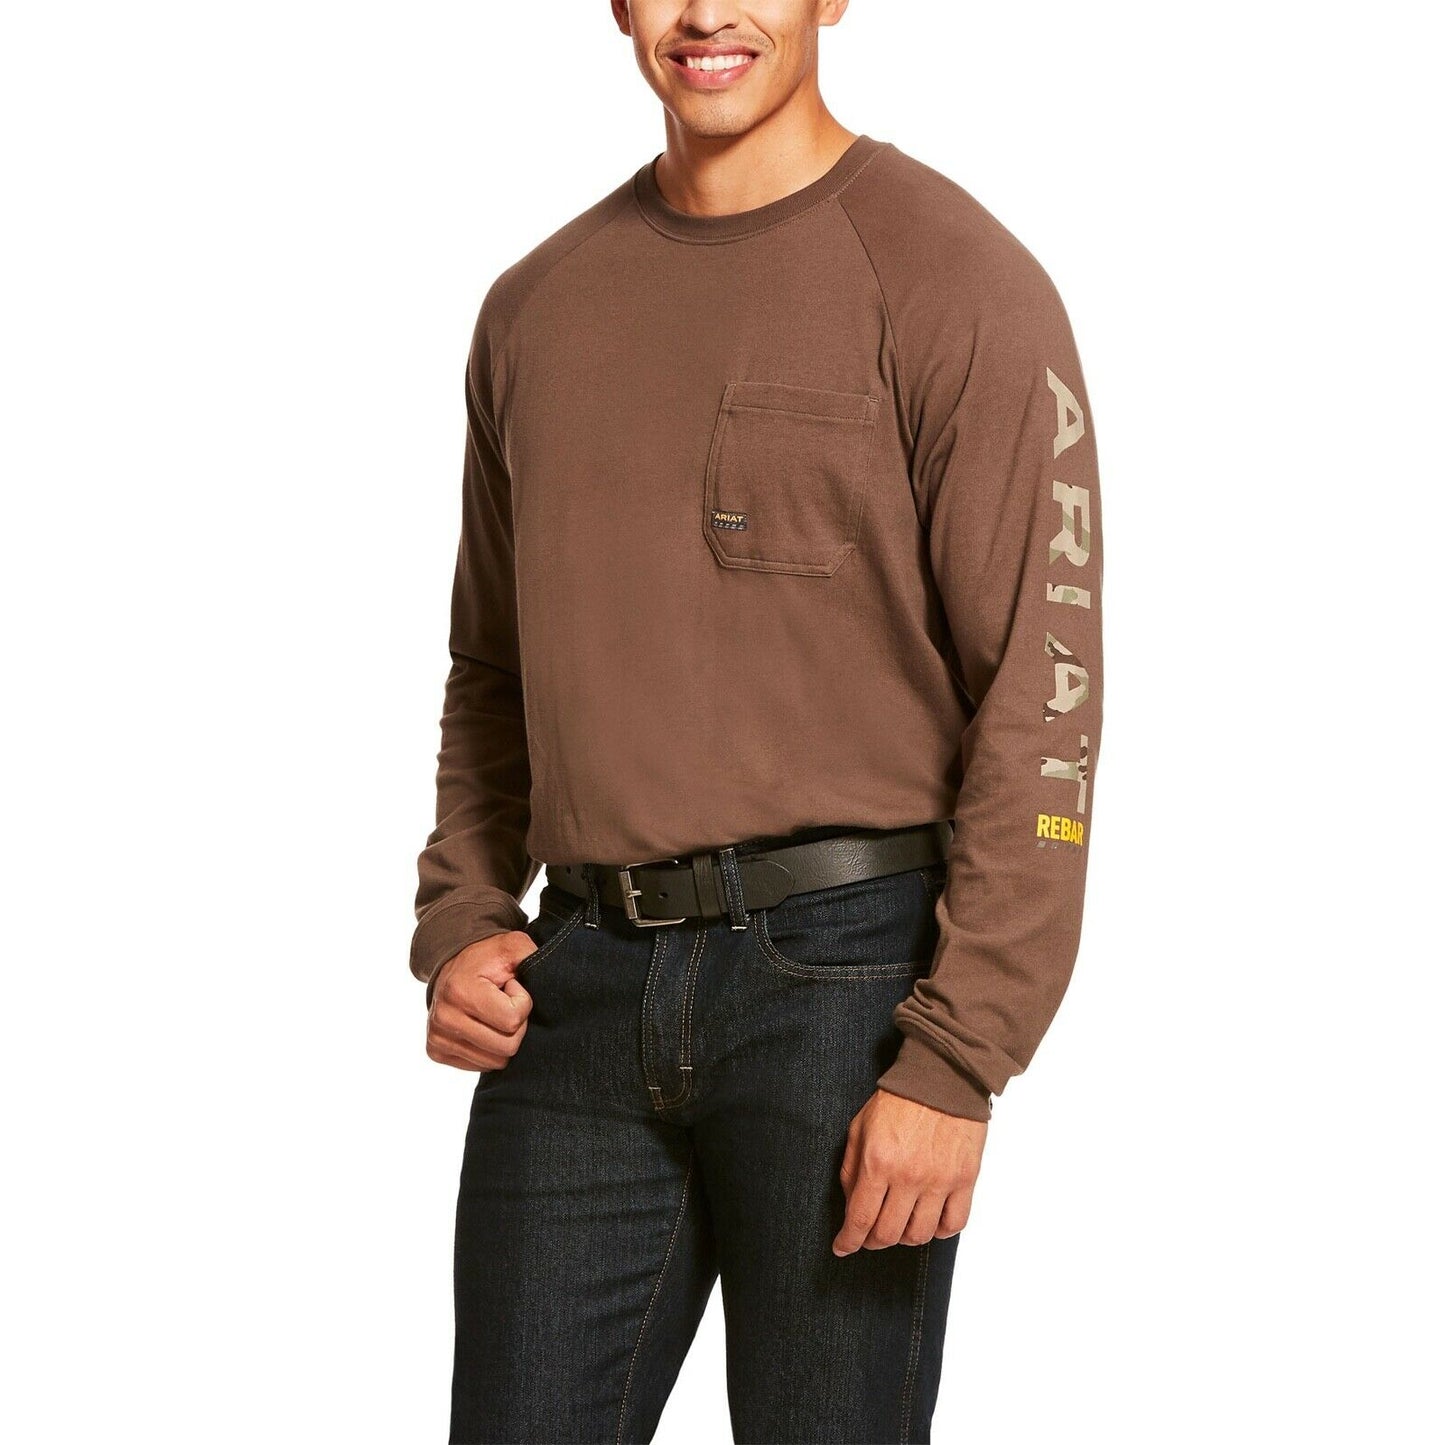 Ariat® Men's Rebar CottonStrong Moss Camo Logo Work T-Shirt 10027904